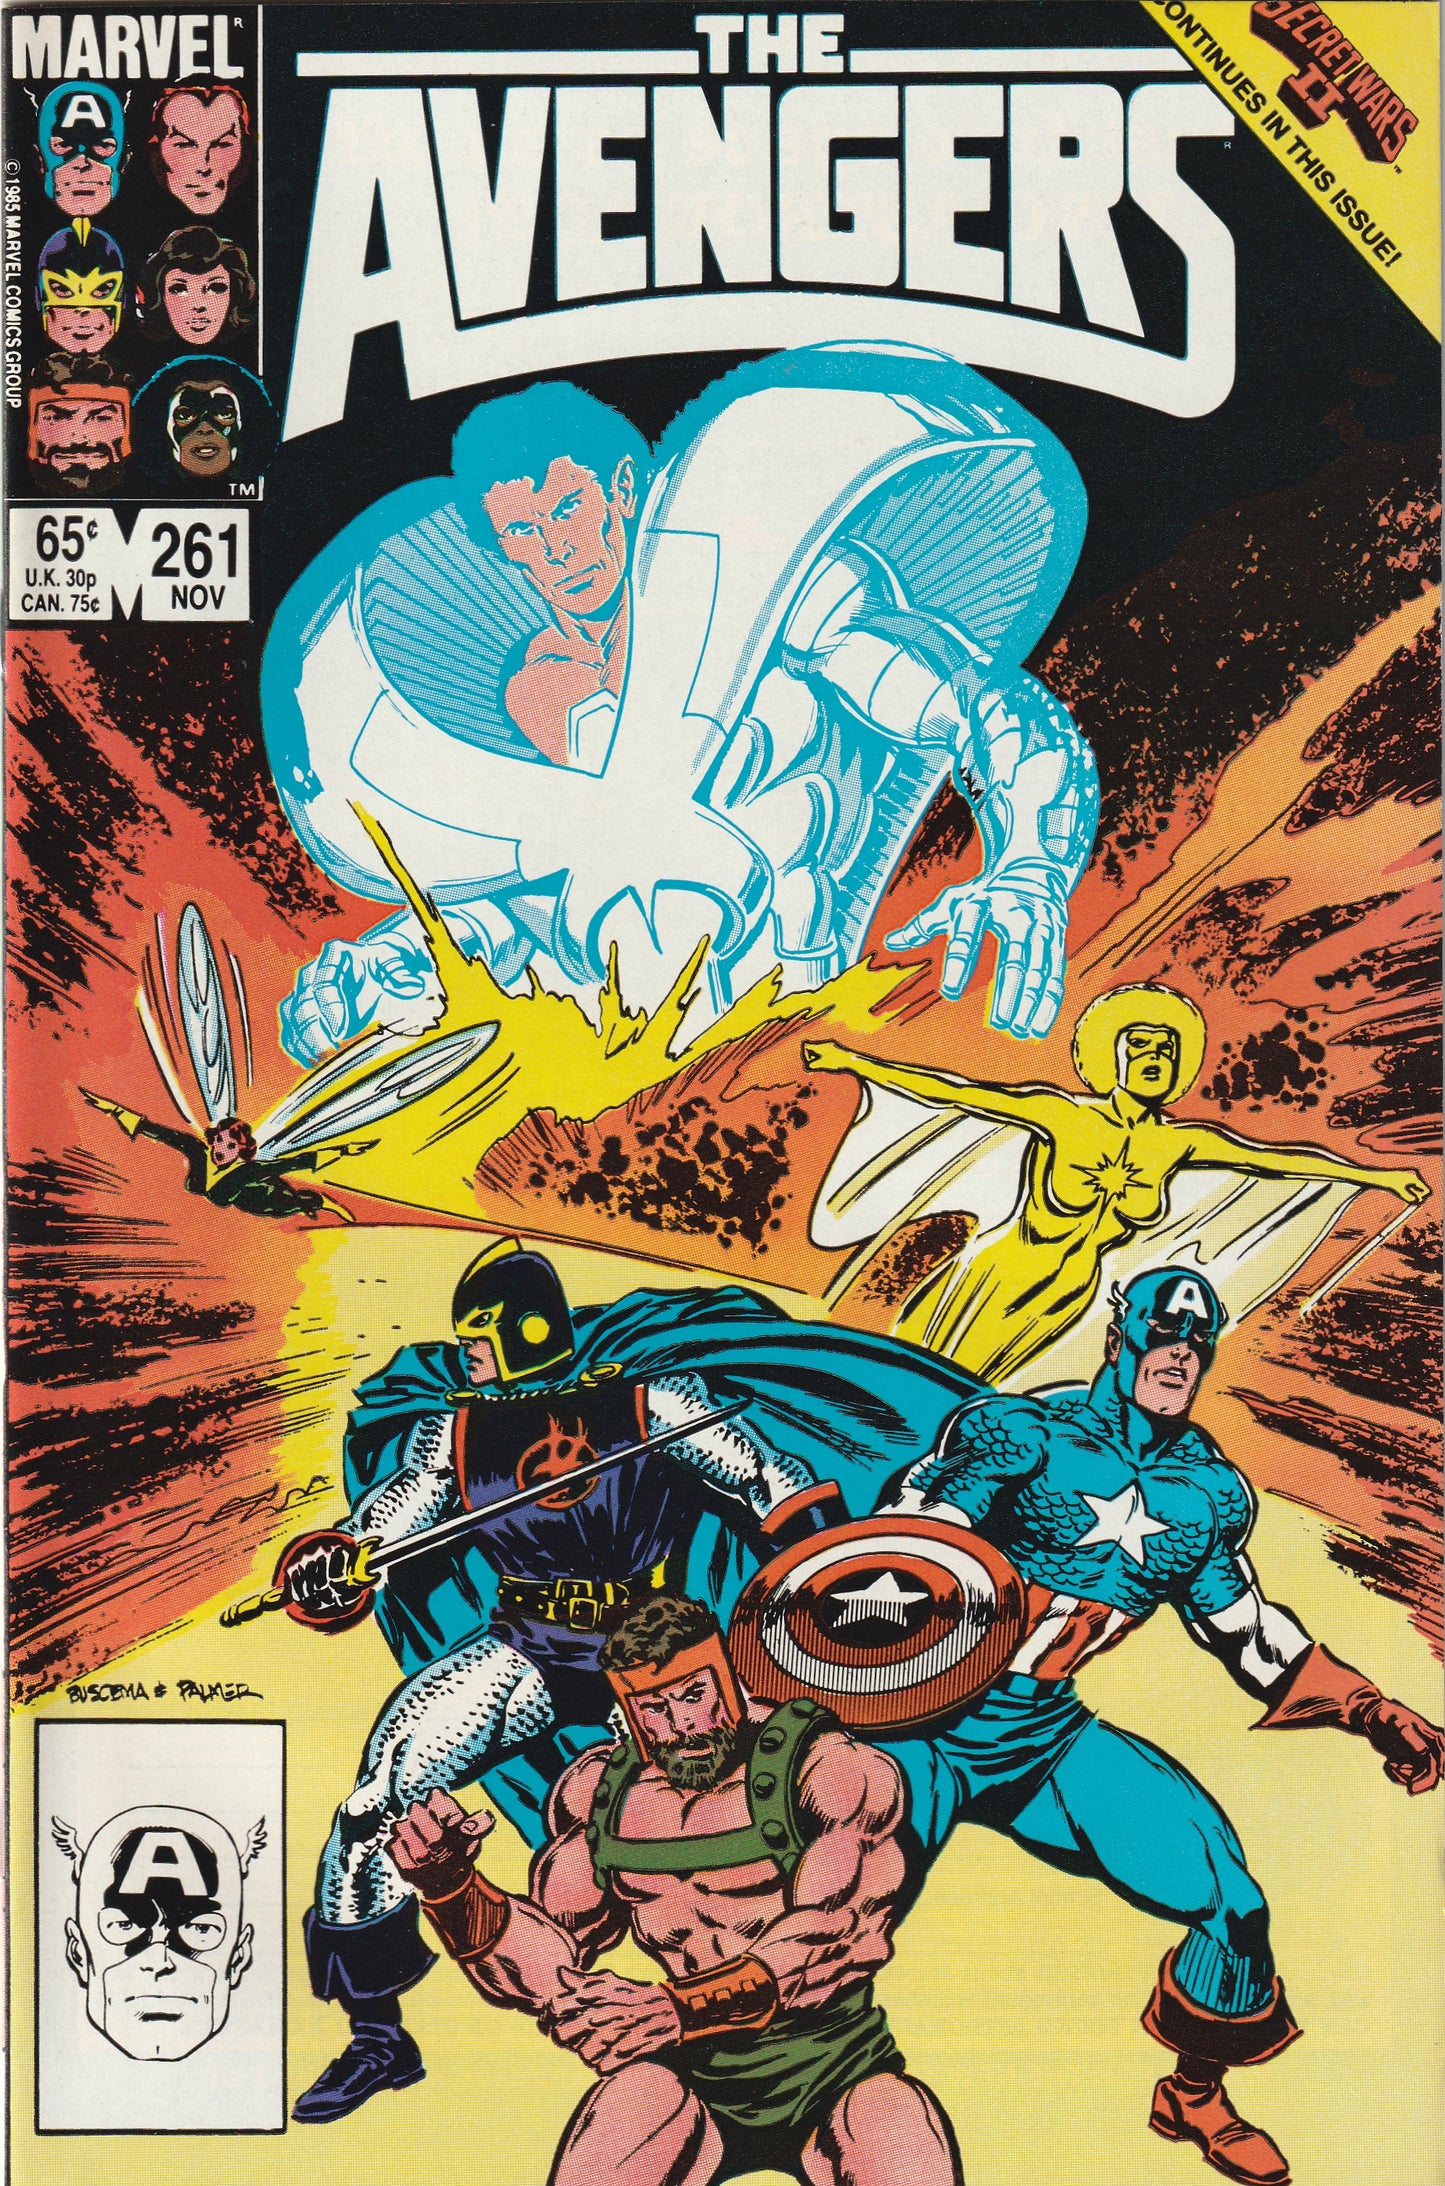 Avengers #261 (1985) -  Starfox leaves Avengers team